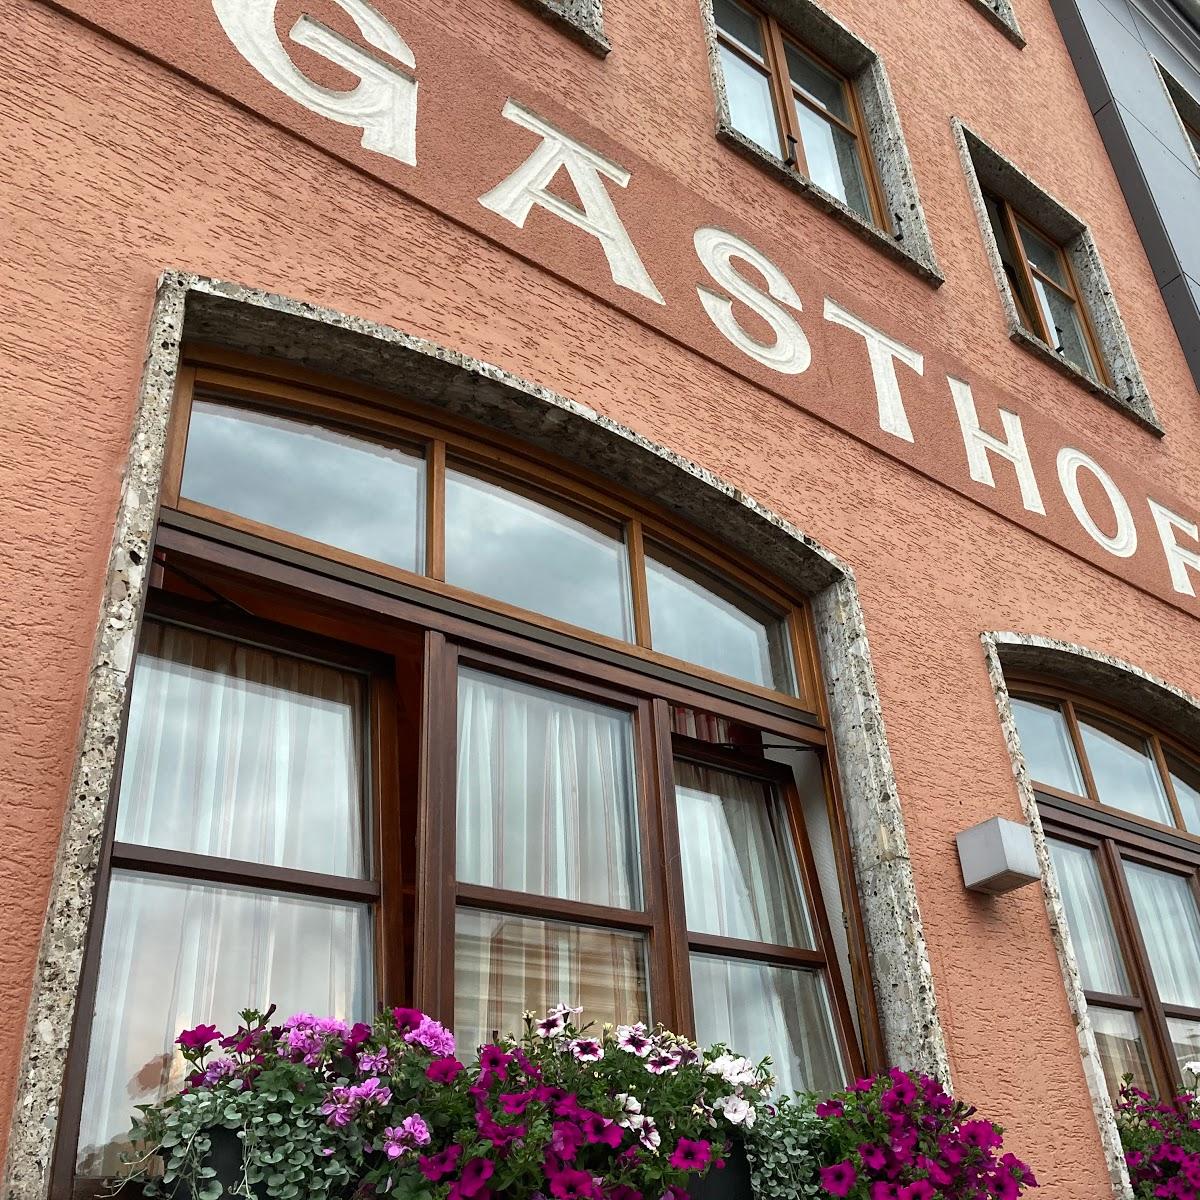 Restaurant "Gasthof Öller" in Mauerkirchen